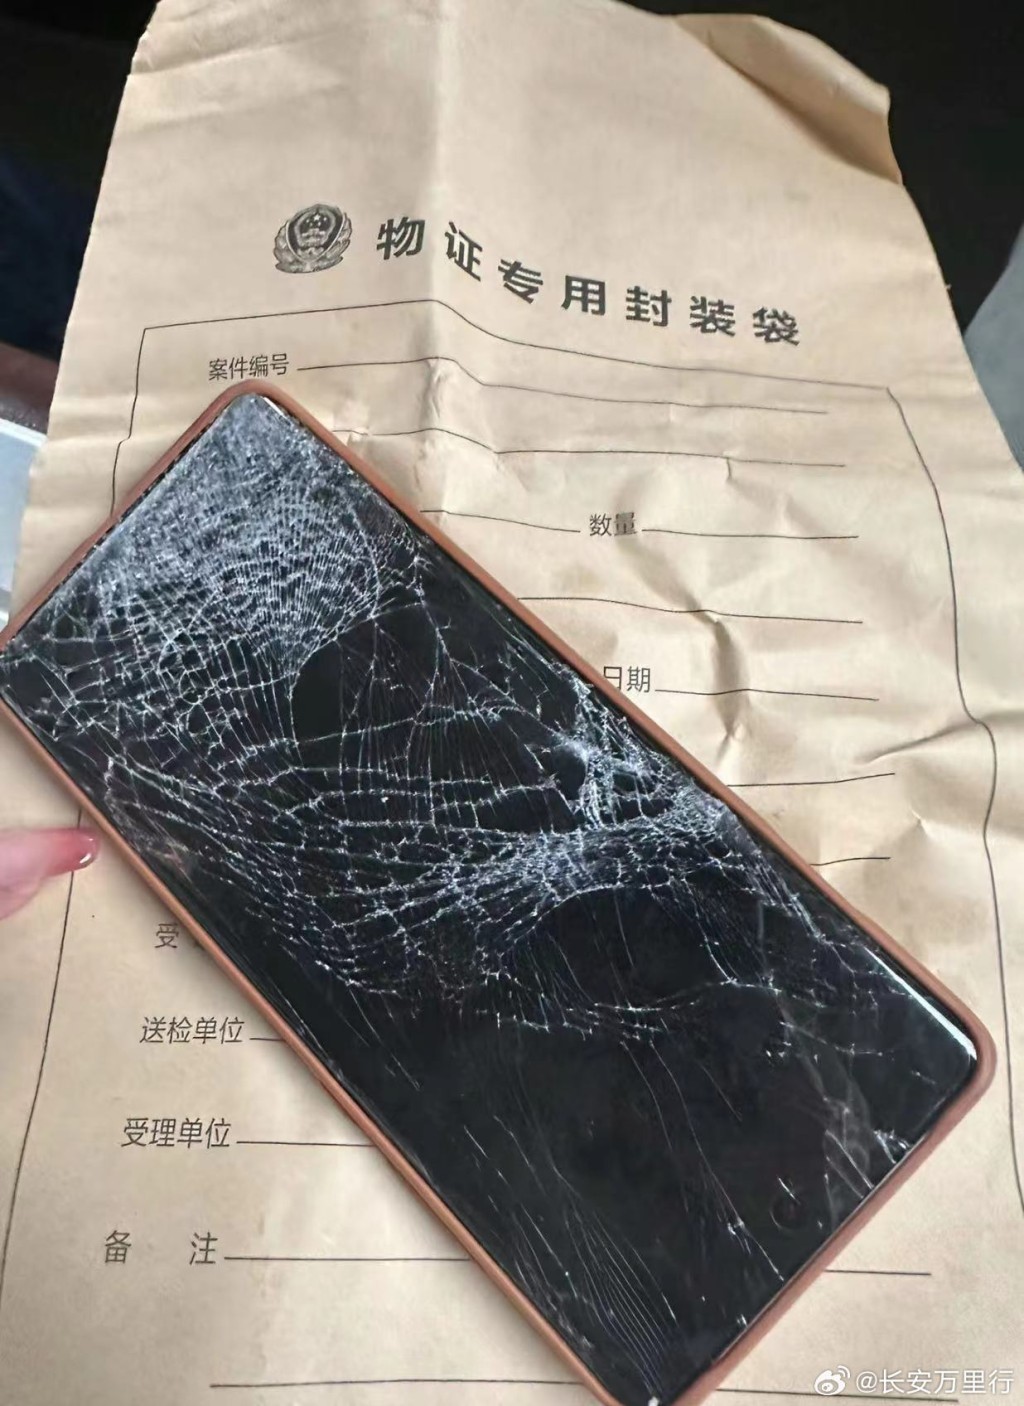 死者手機被壓碎。